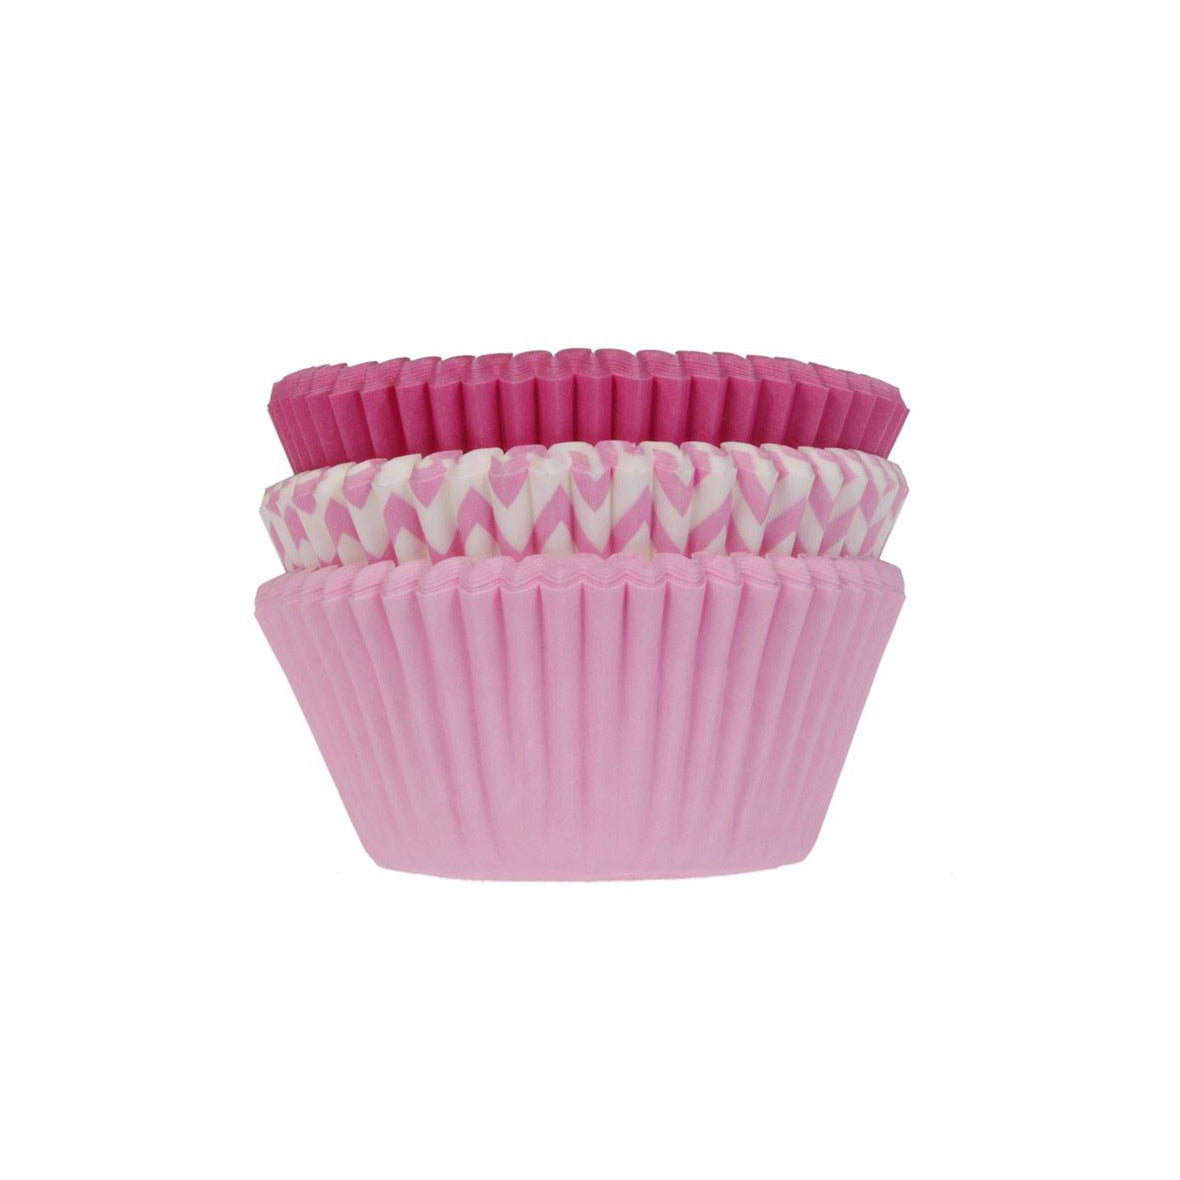 House of Marie Cupcake Backförmchen Pink Mix - 75 Stk